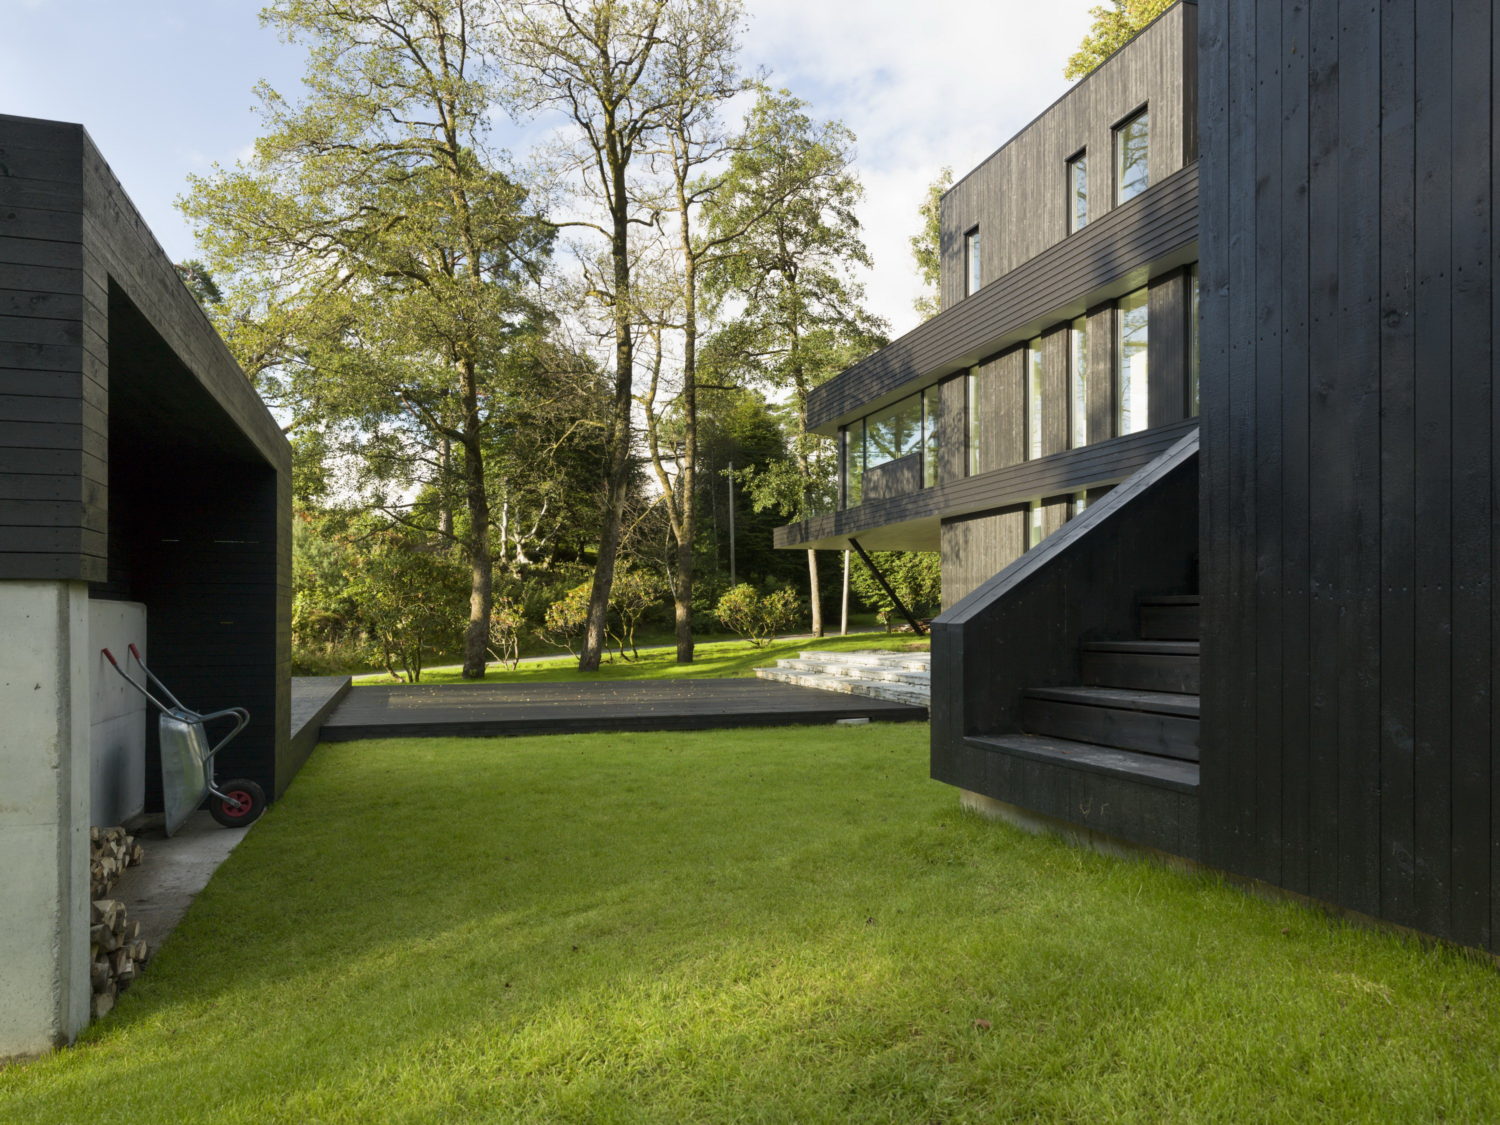 Villa S | Dark Modern Home by Saunders Architecture